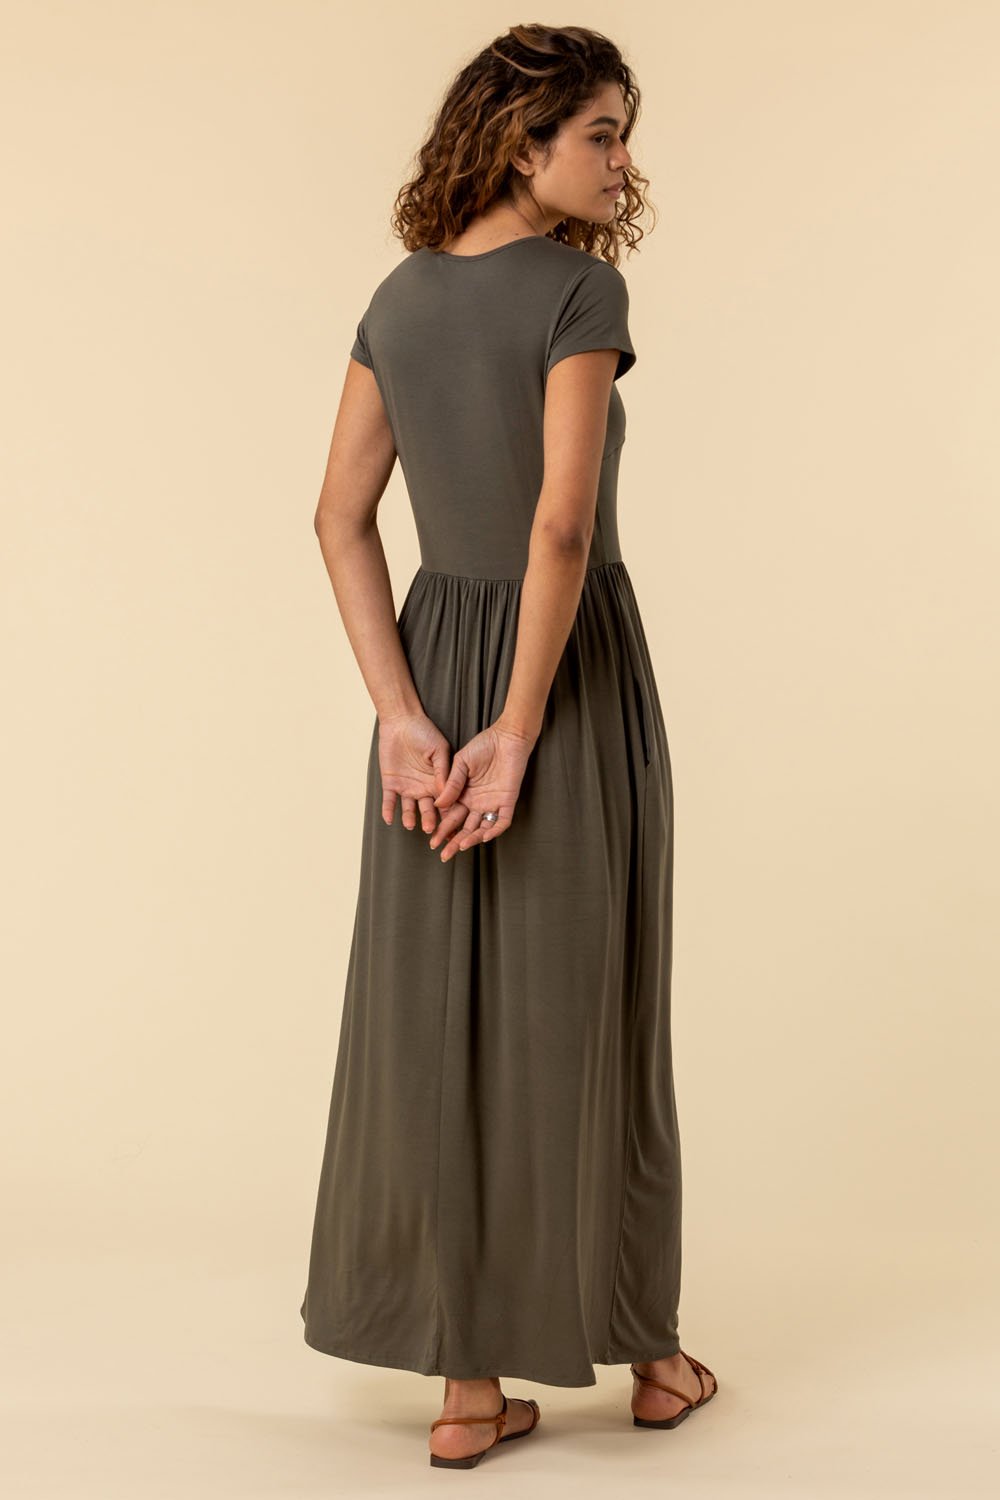 KHAKI Gathered Skirt Maxi Dress, Image 2 of 5